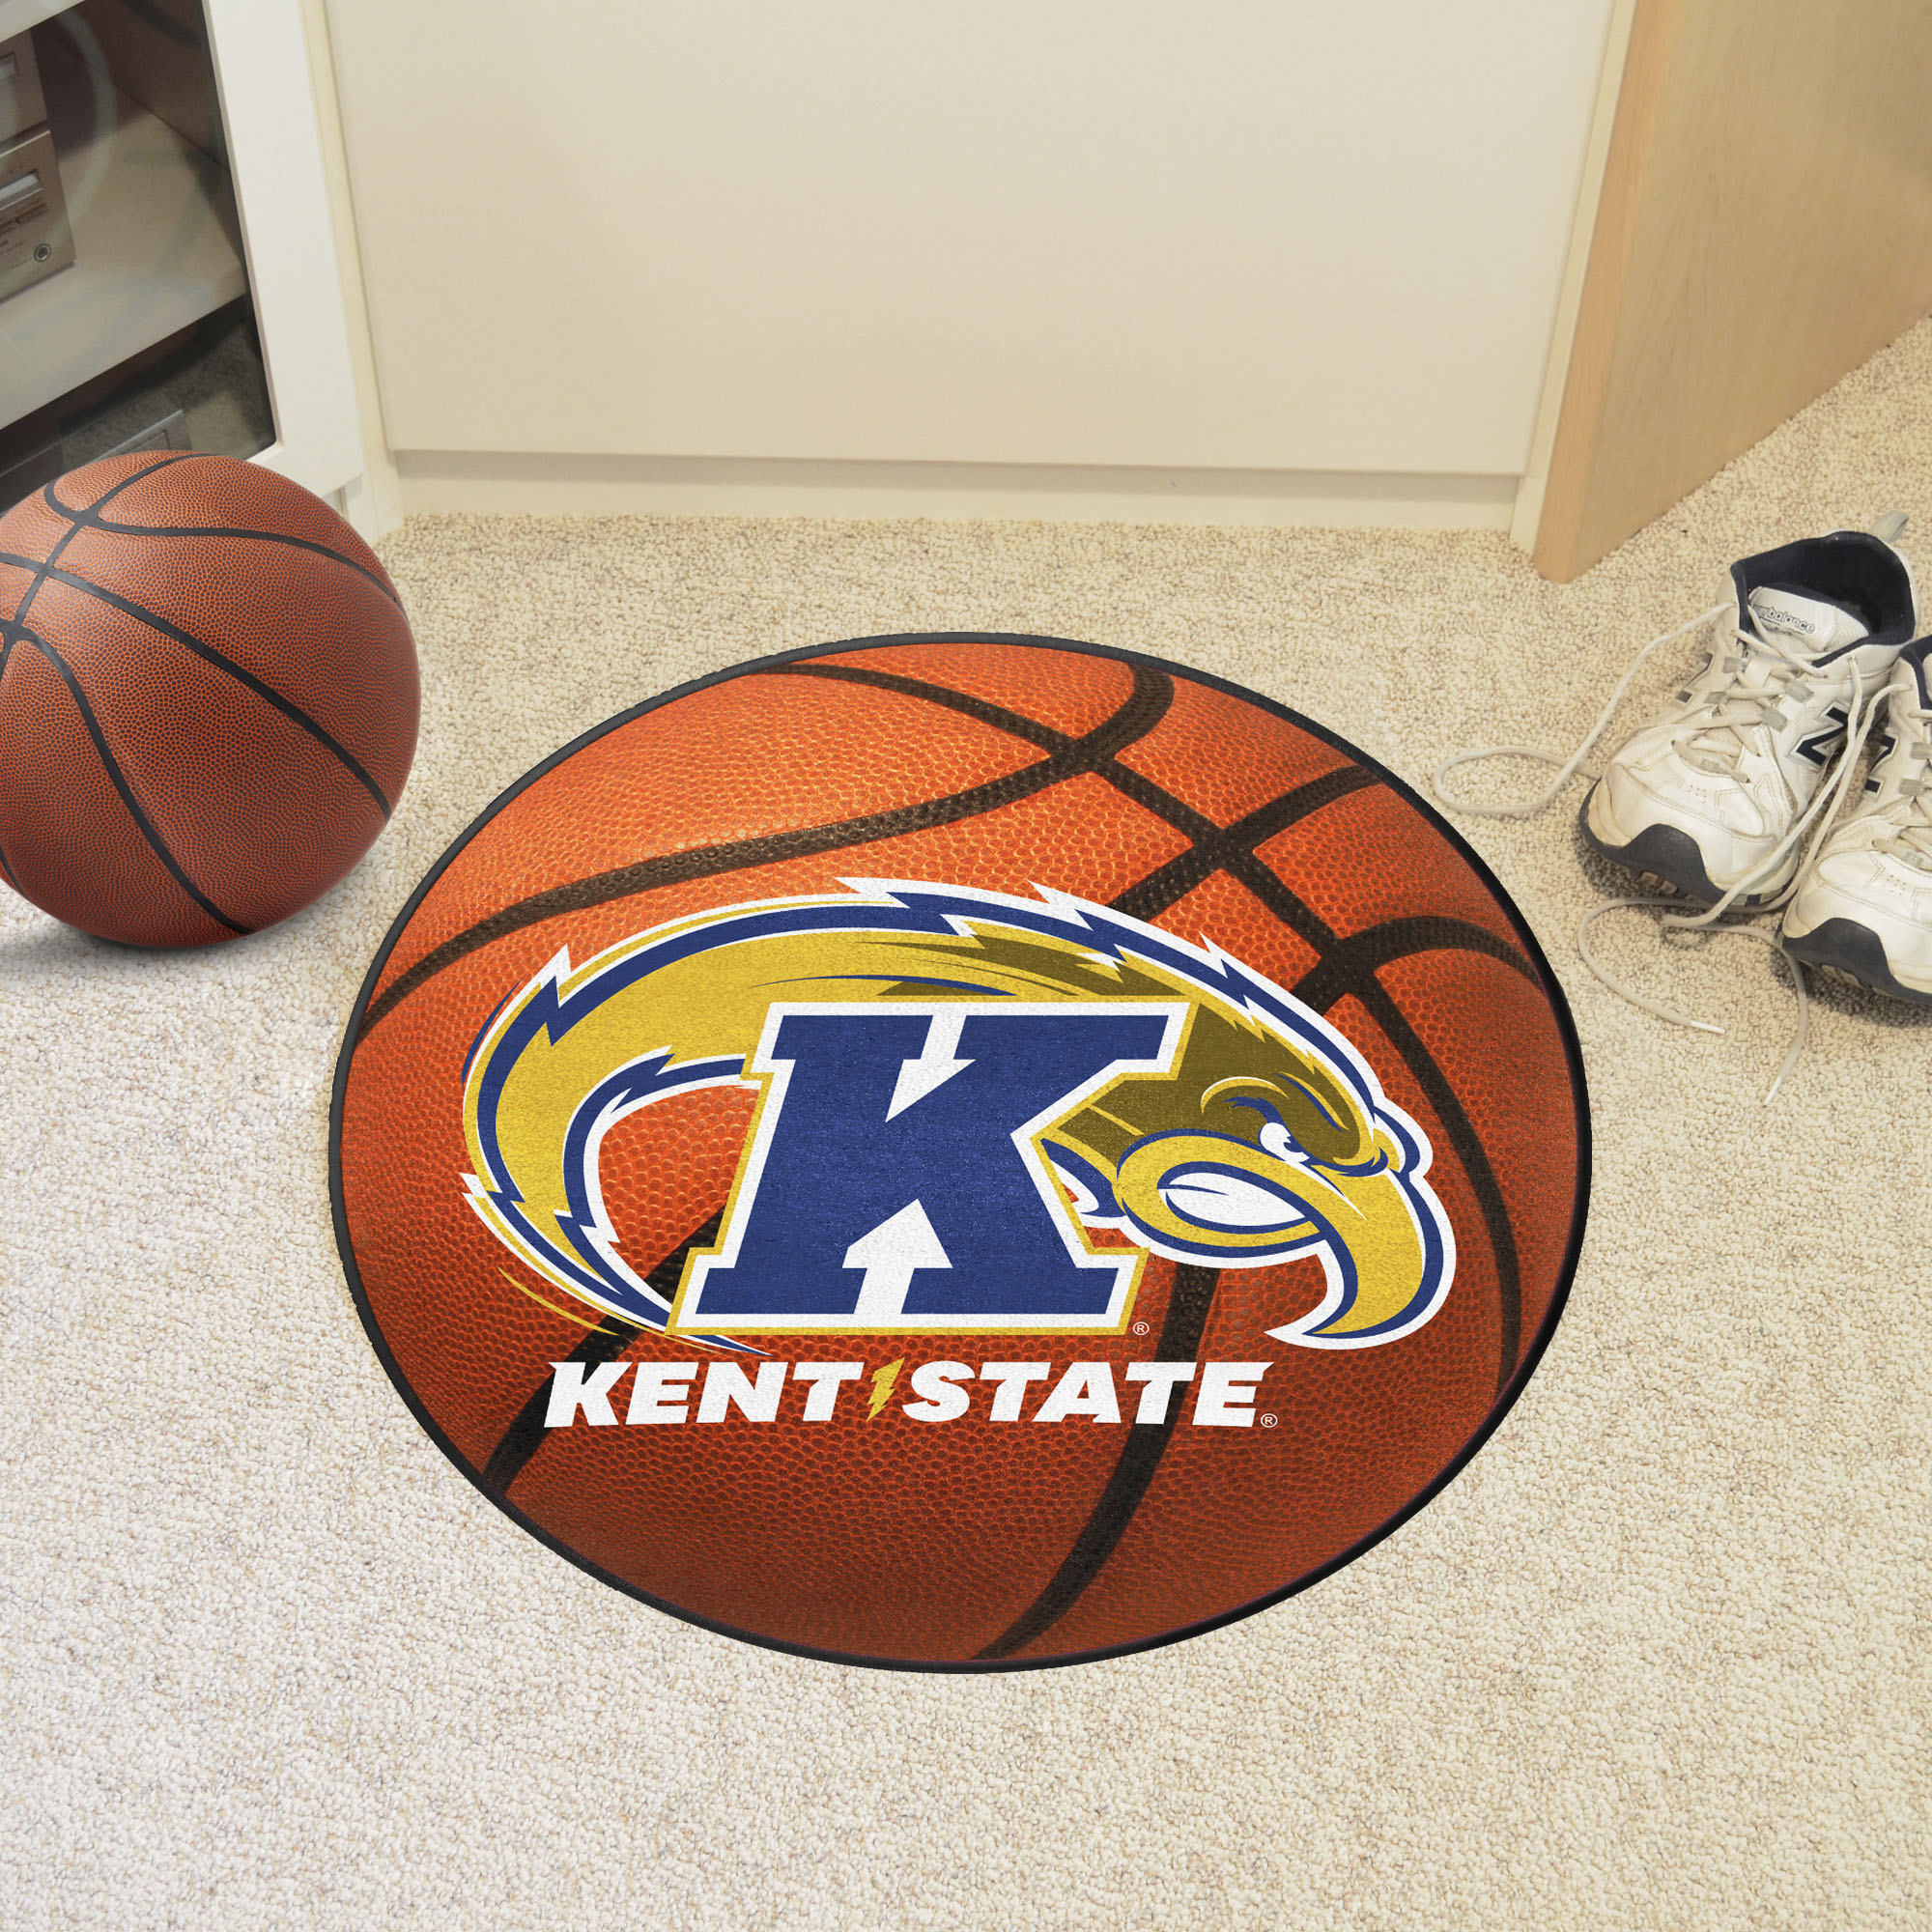 Bowling Green State University Ball Shaped Area Rugs (Ball Shaped Area Rugs: Basketball)